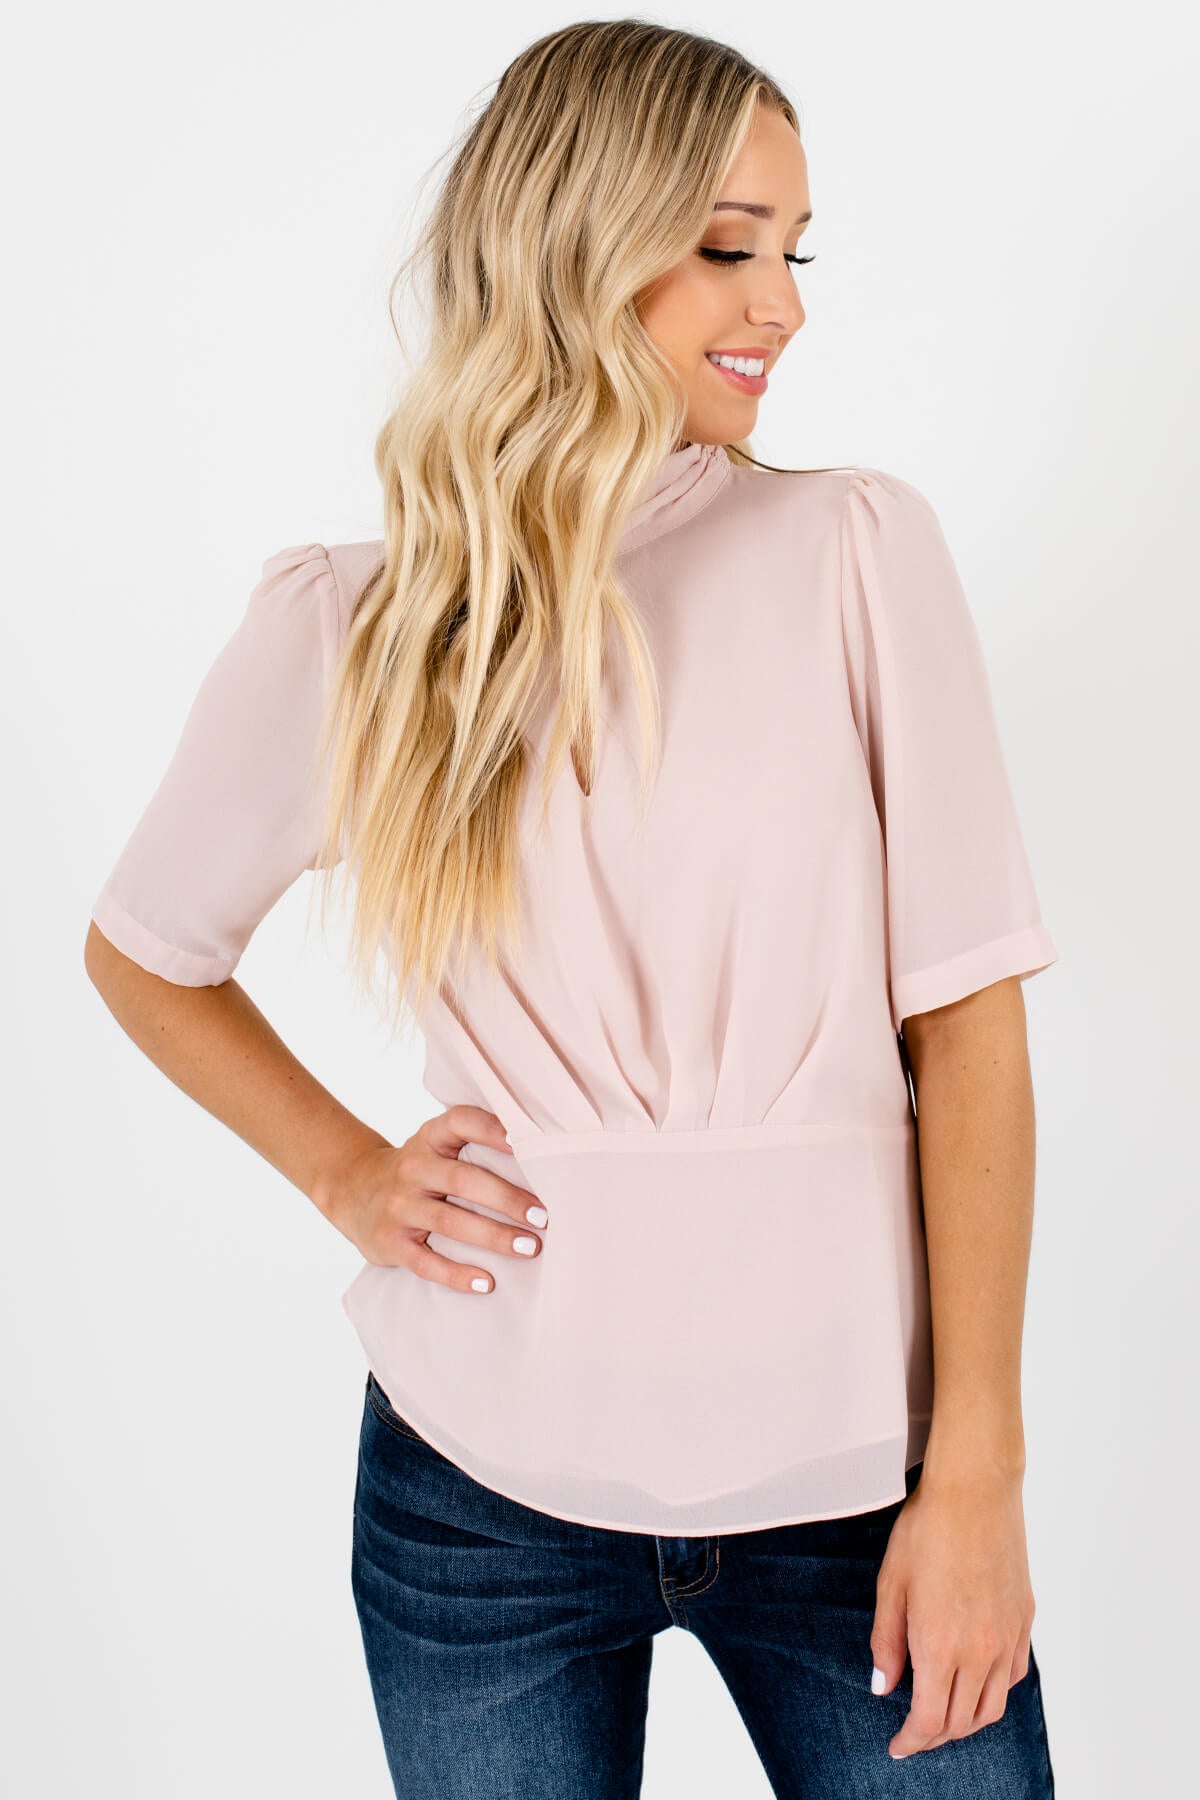 Blush Pink Neckline Cutout Detail Boutique Blouses for Women